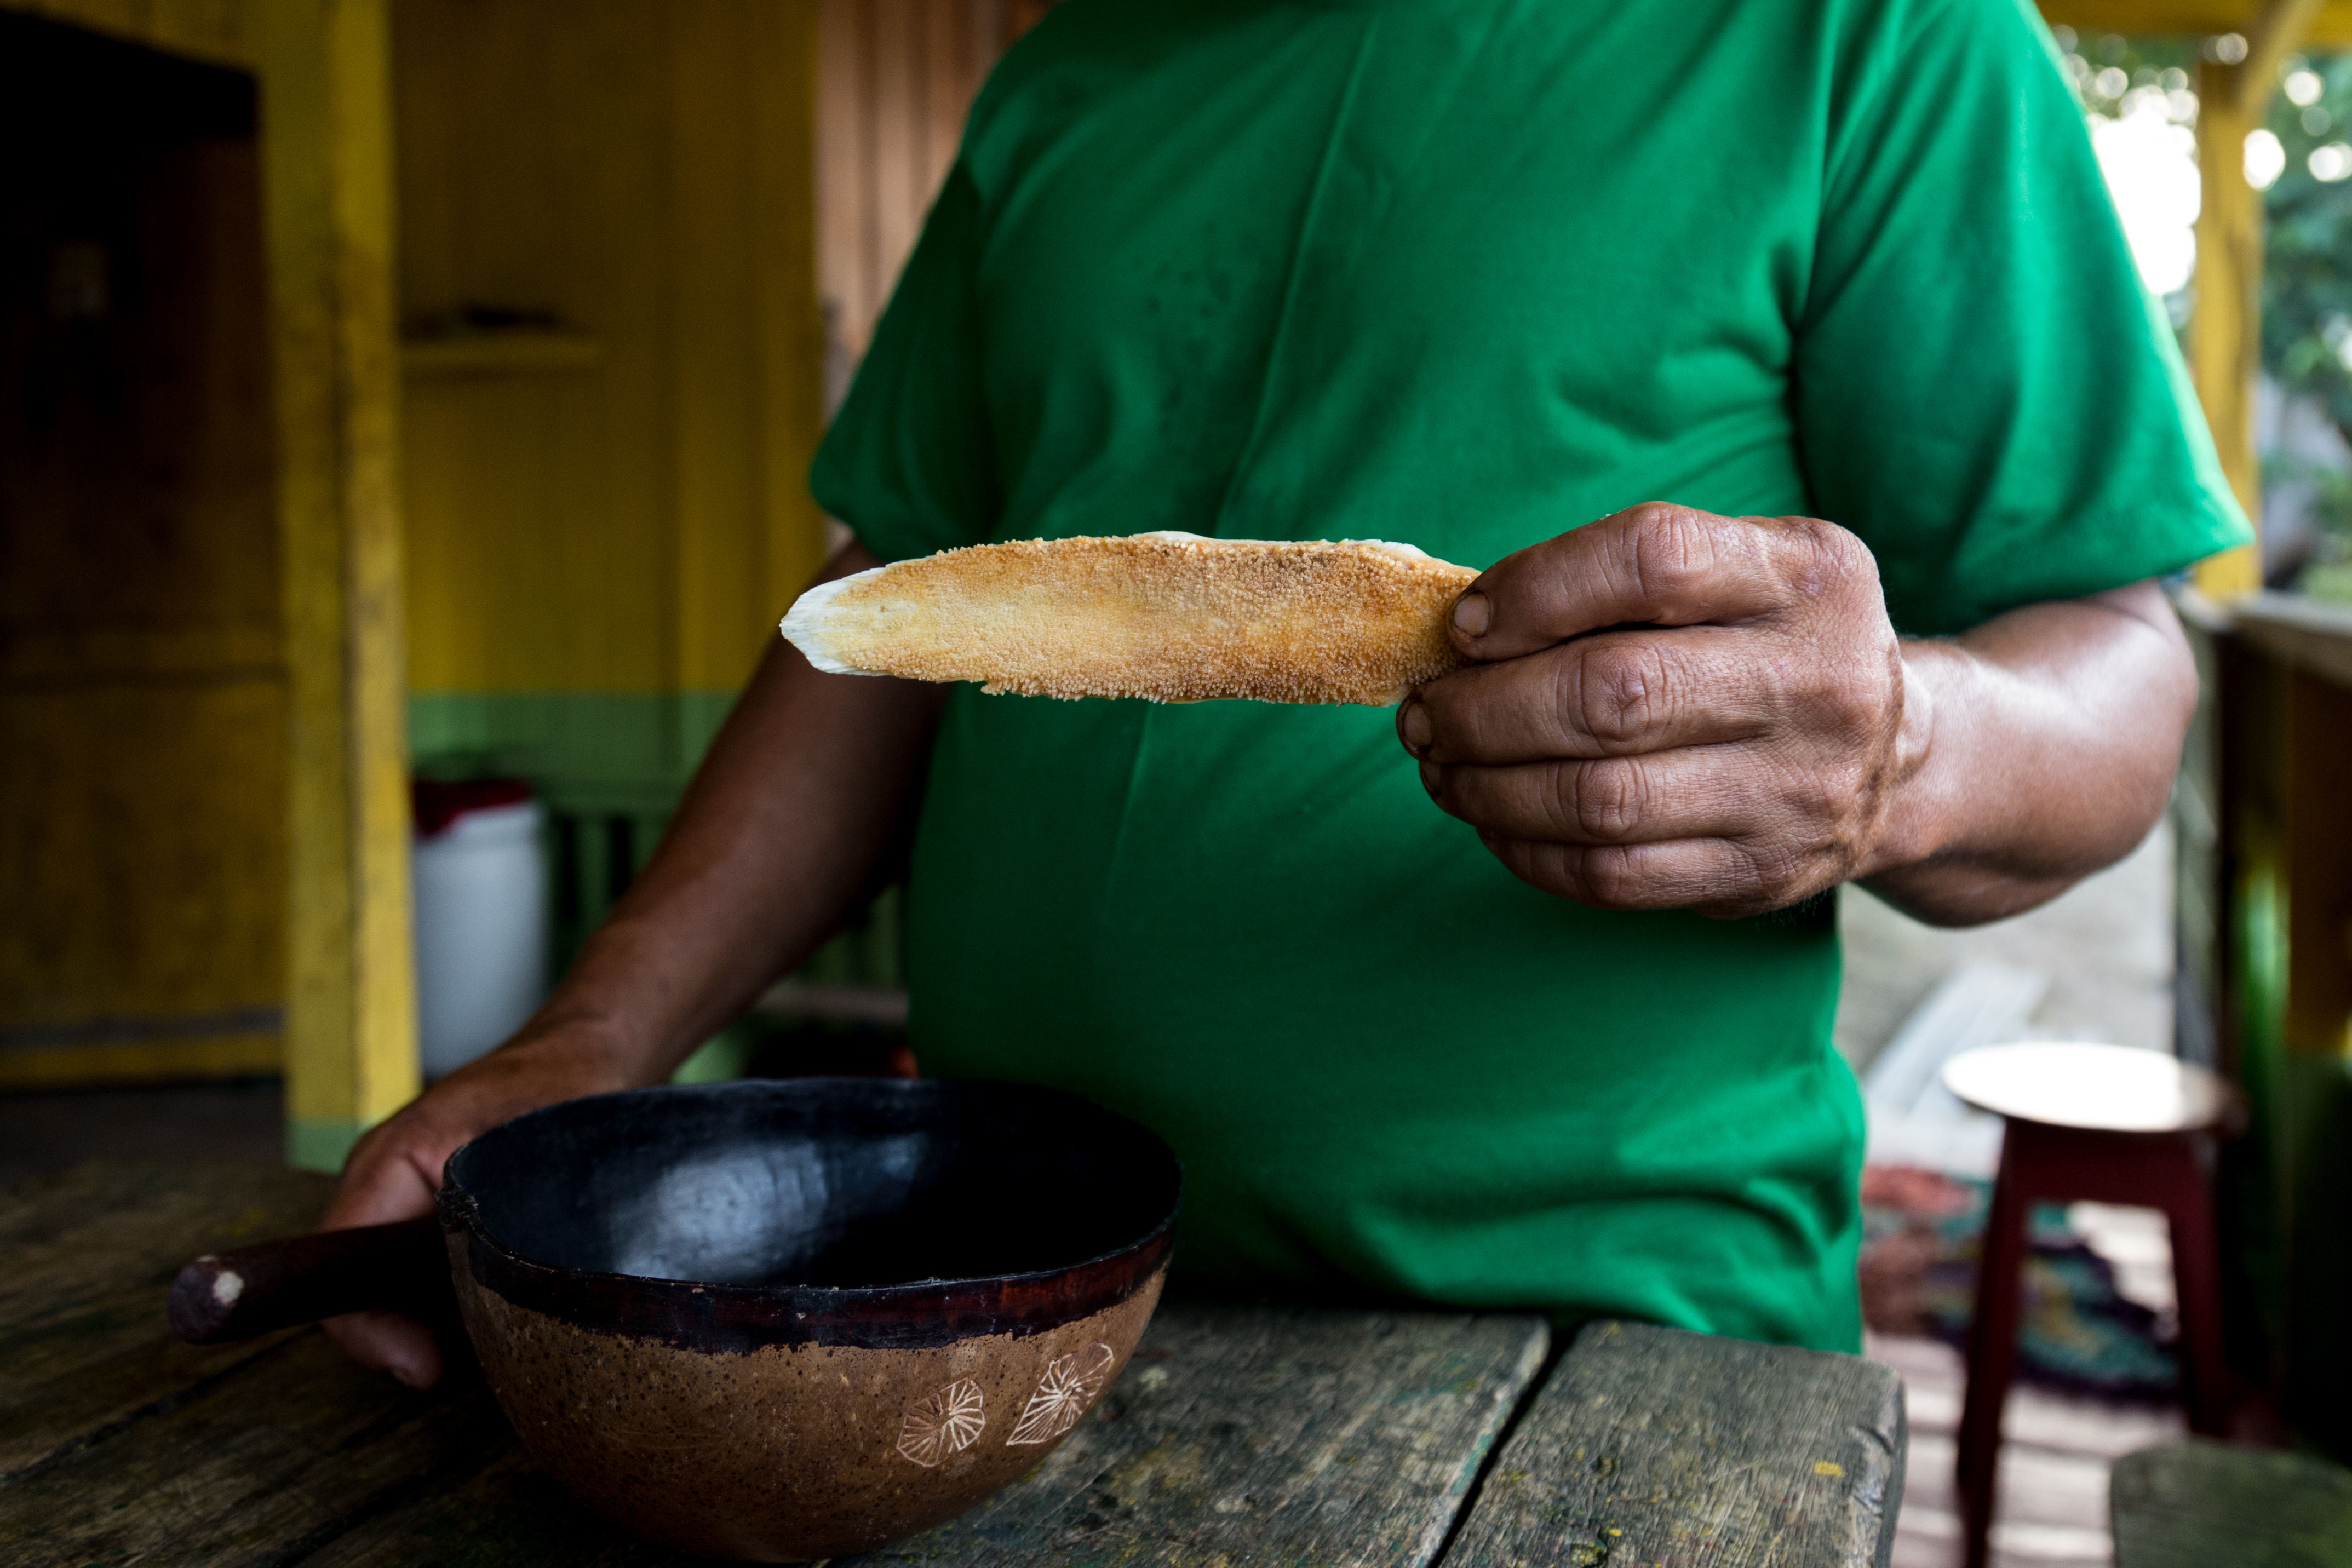 Os maueenses consomem o guaraná em pó, bola ou bastão. Os últimos dois são versões do grão torrado e macerado que costumam ser raladas na língua do pirarucu, peixe amazônico. 